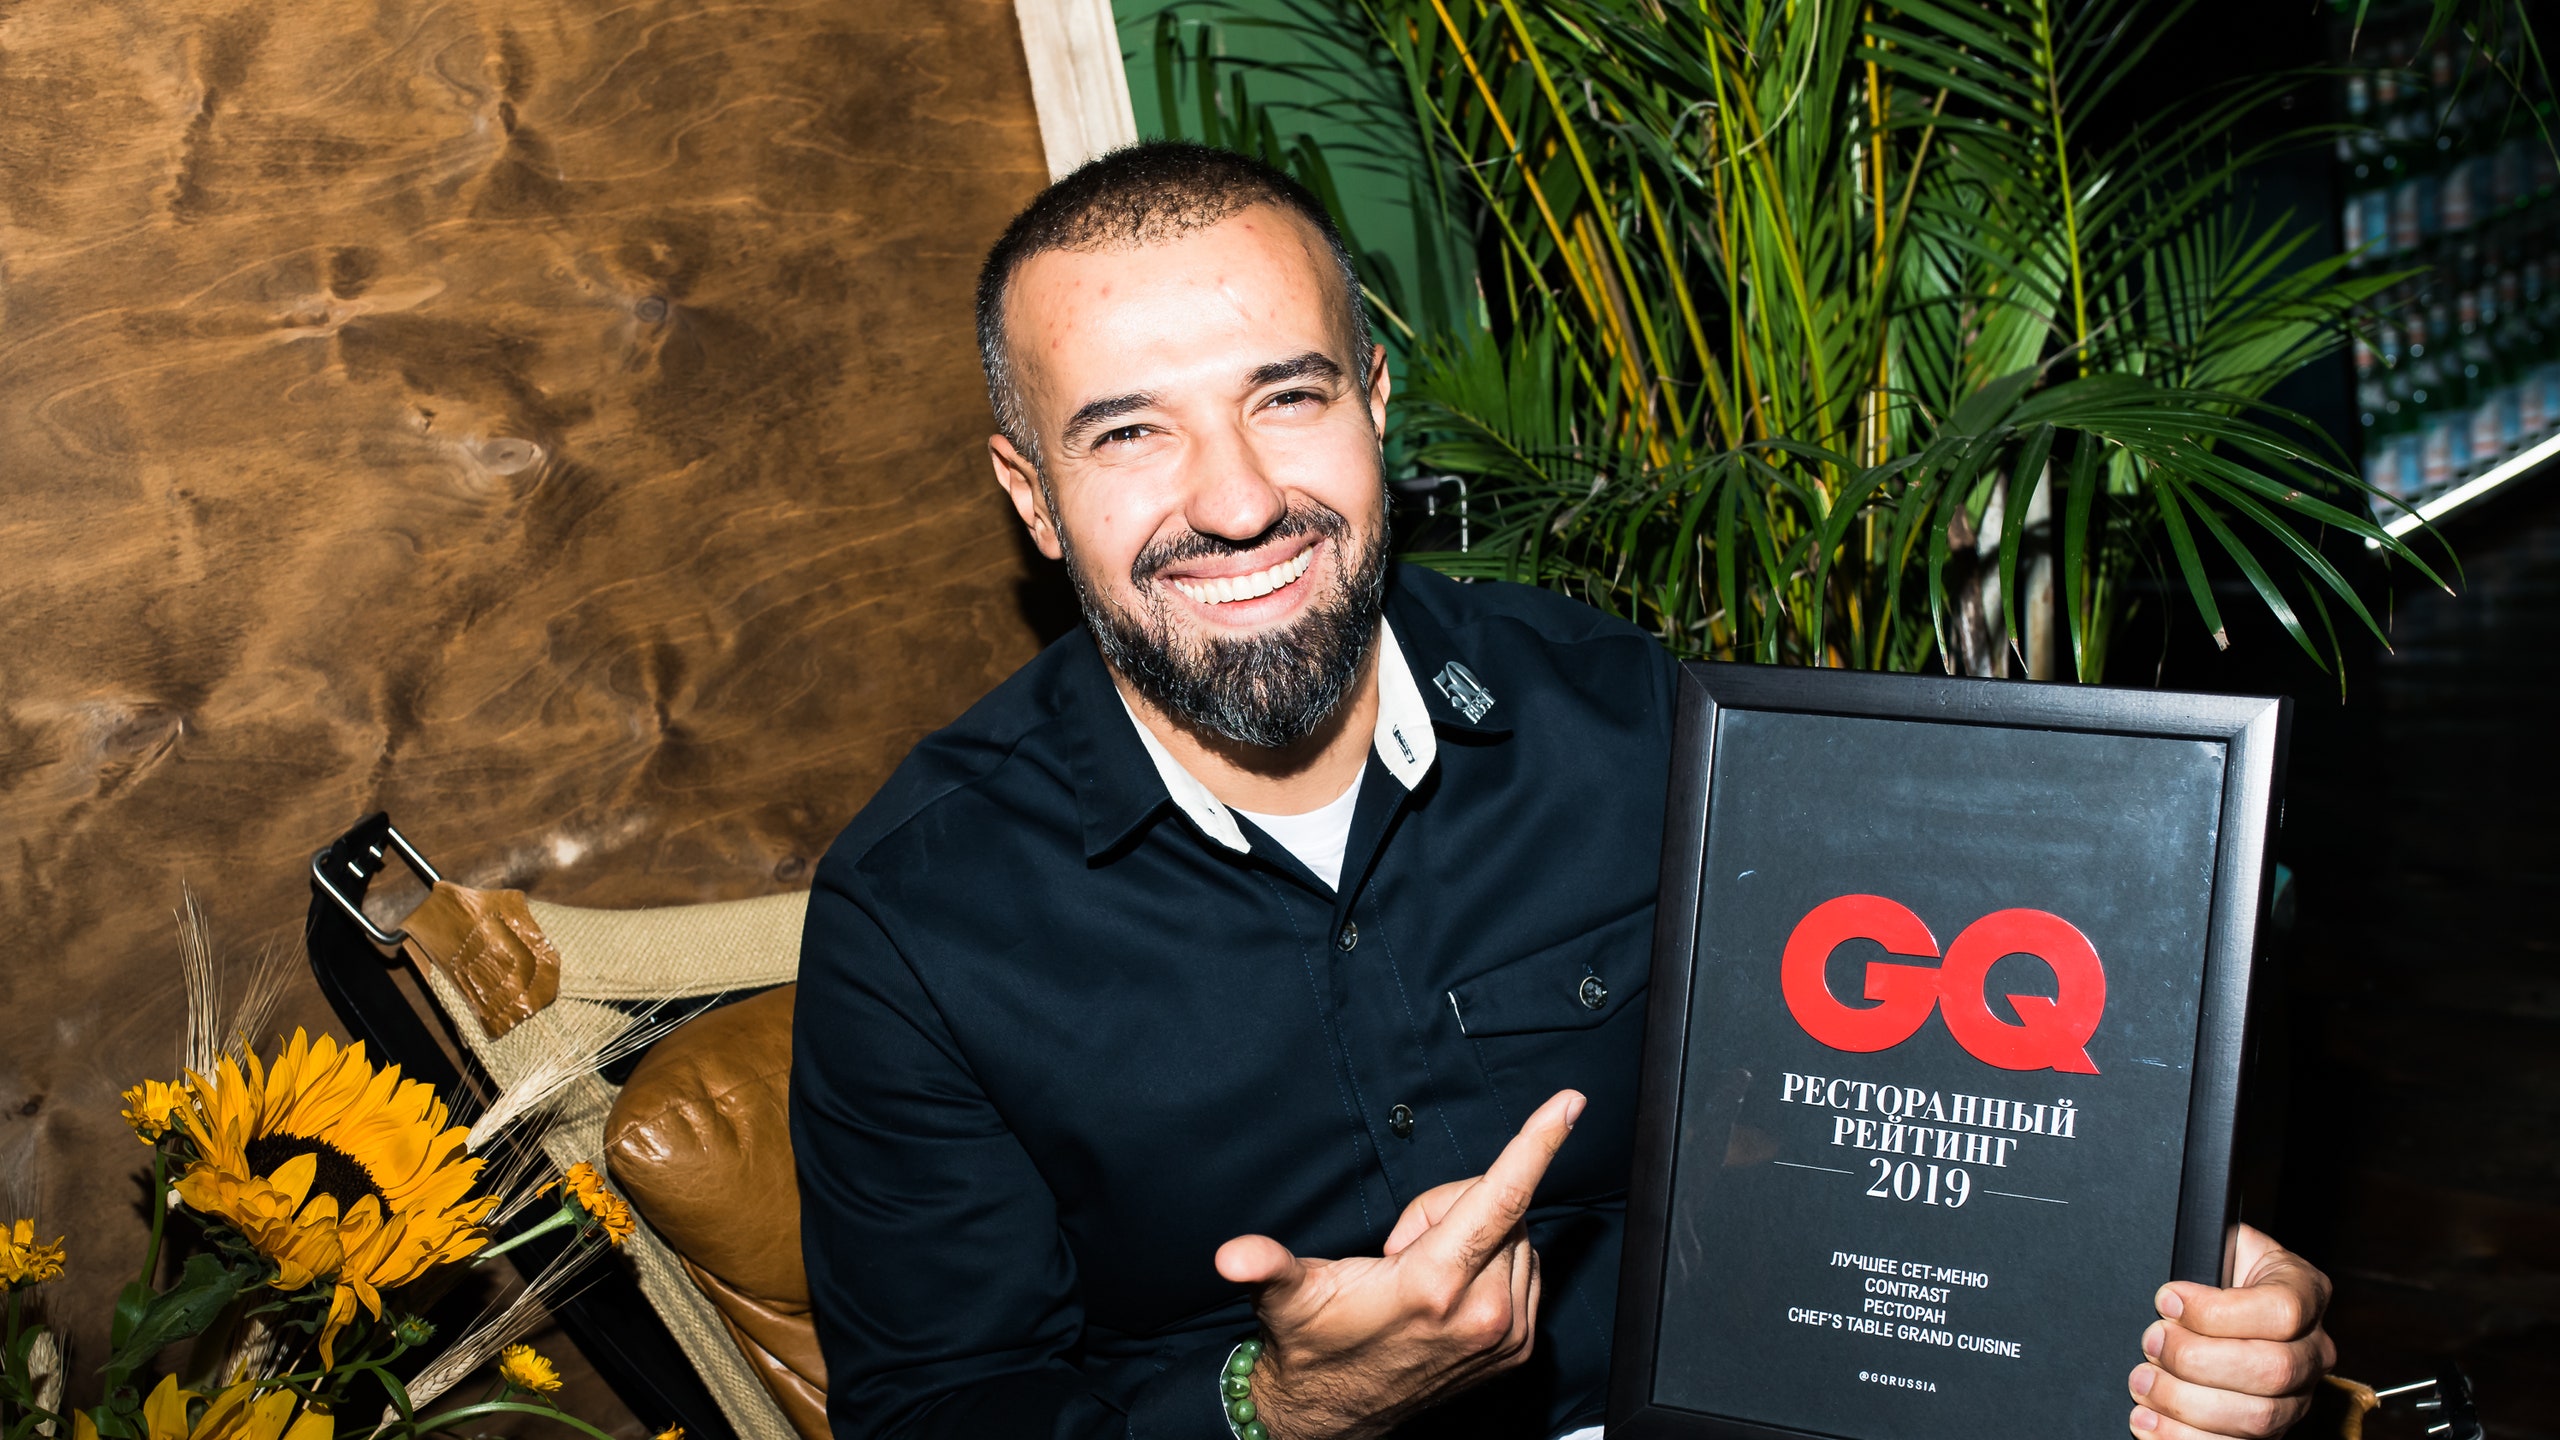 Гости премии “GQ Ресторанный рейтинг” 2019